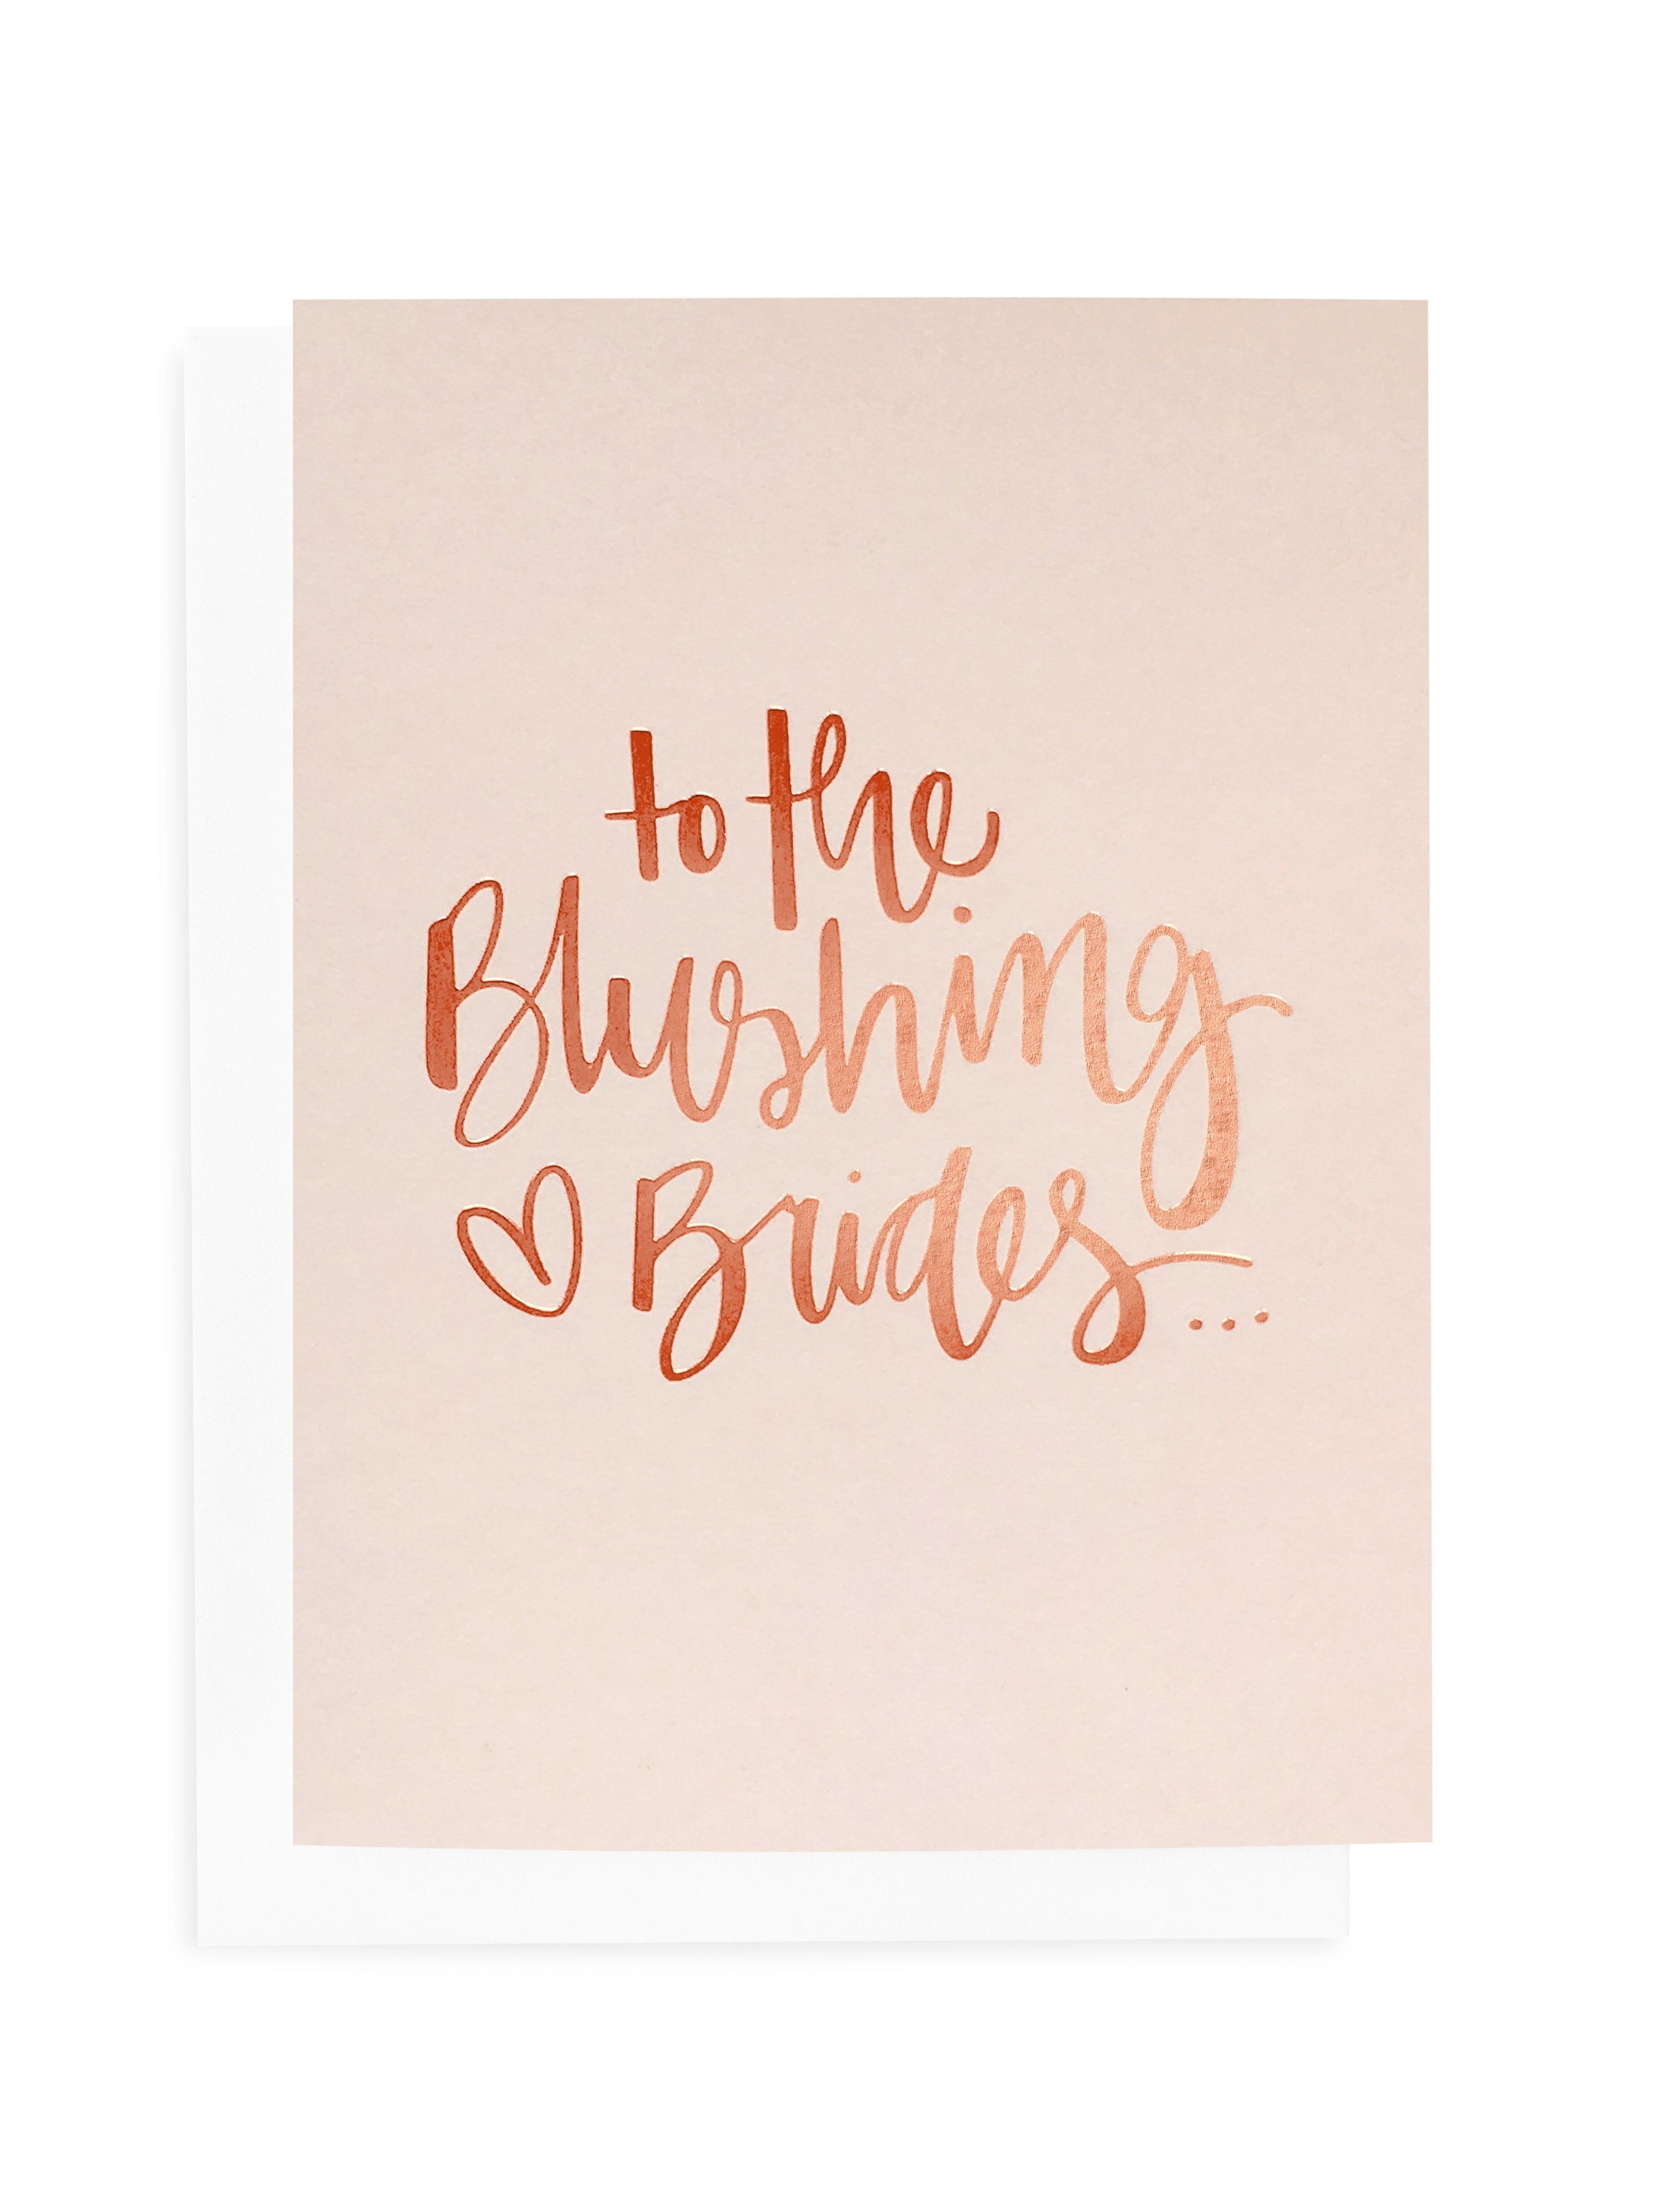 Blushing Brides Greeting Card